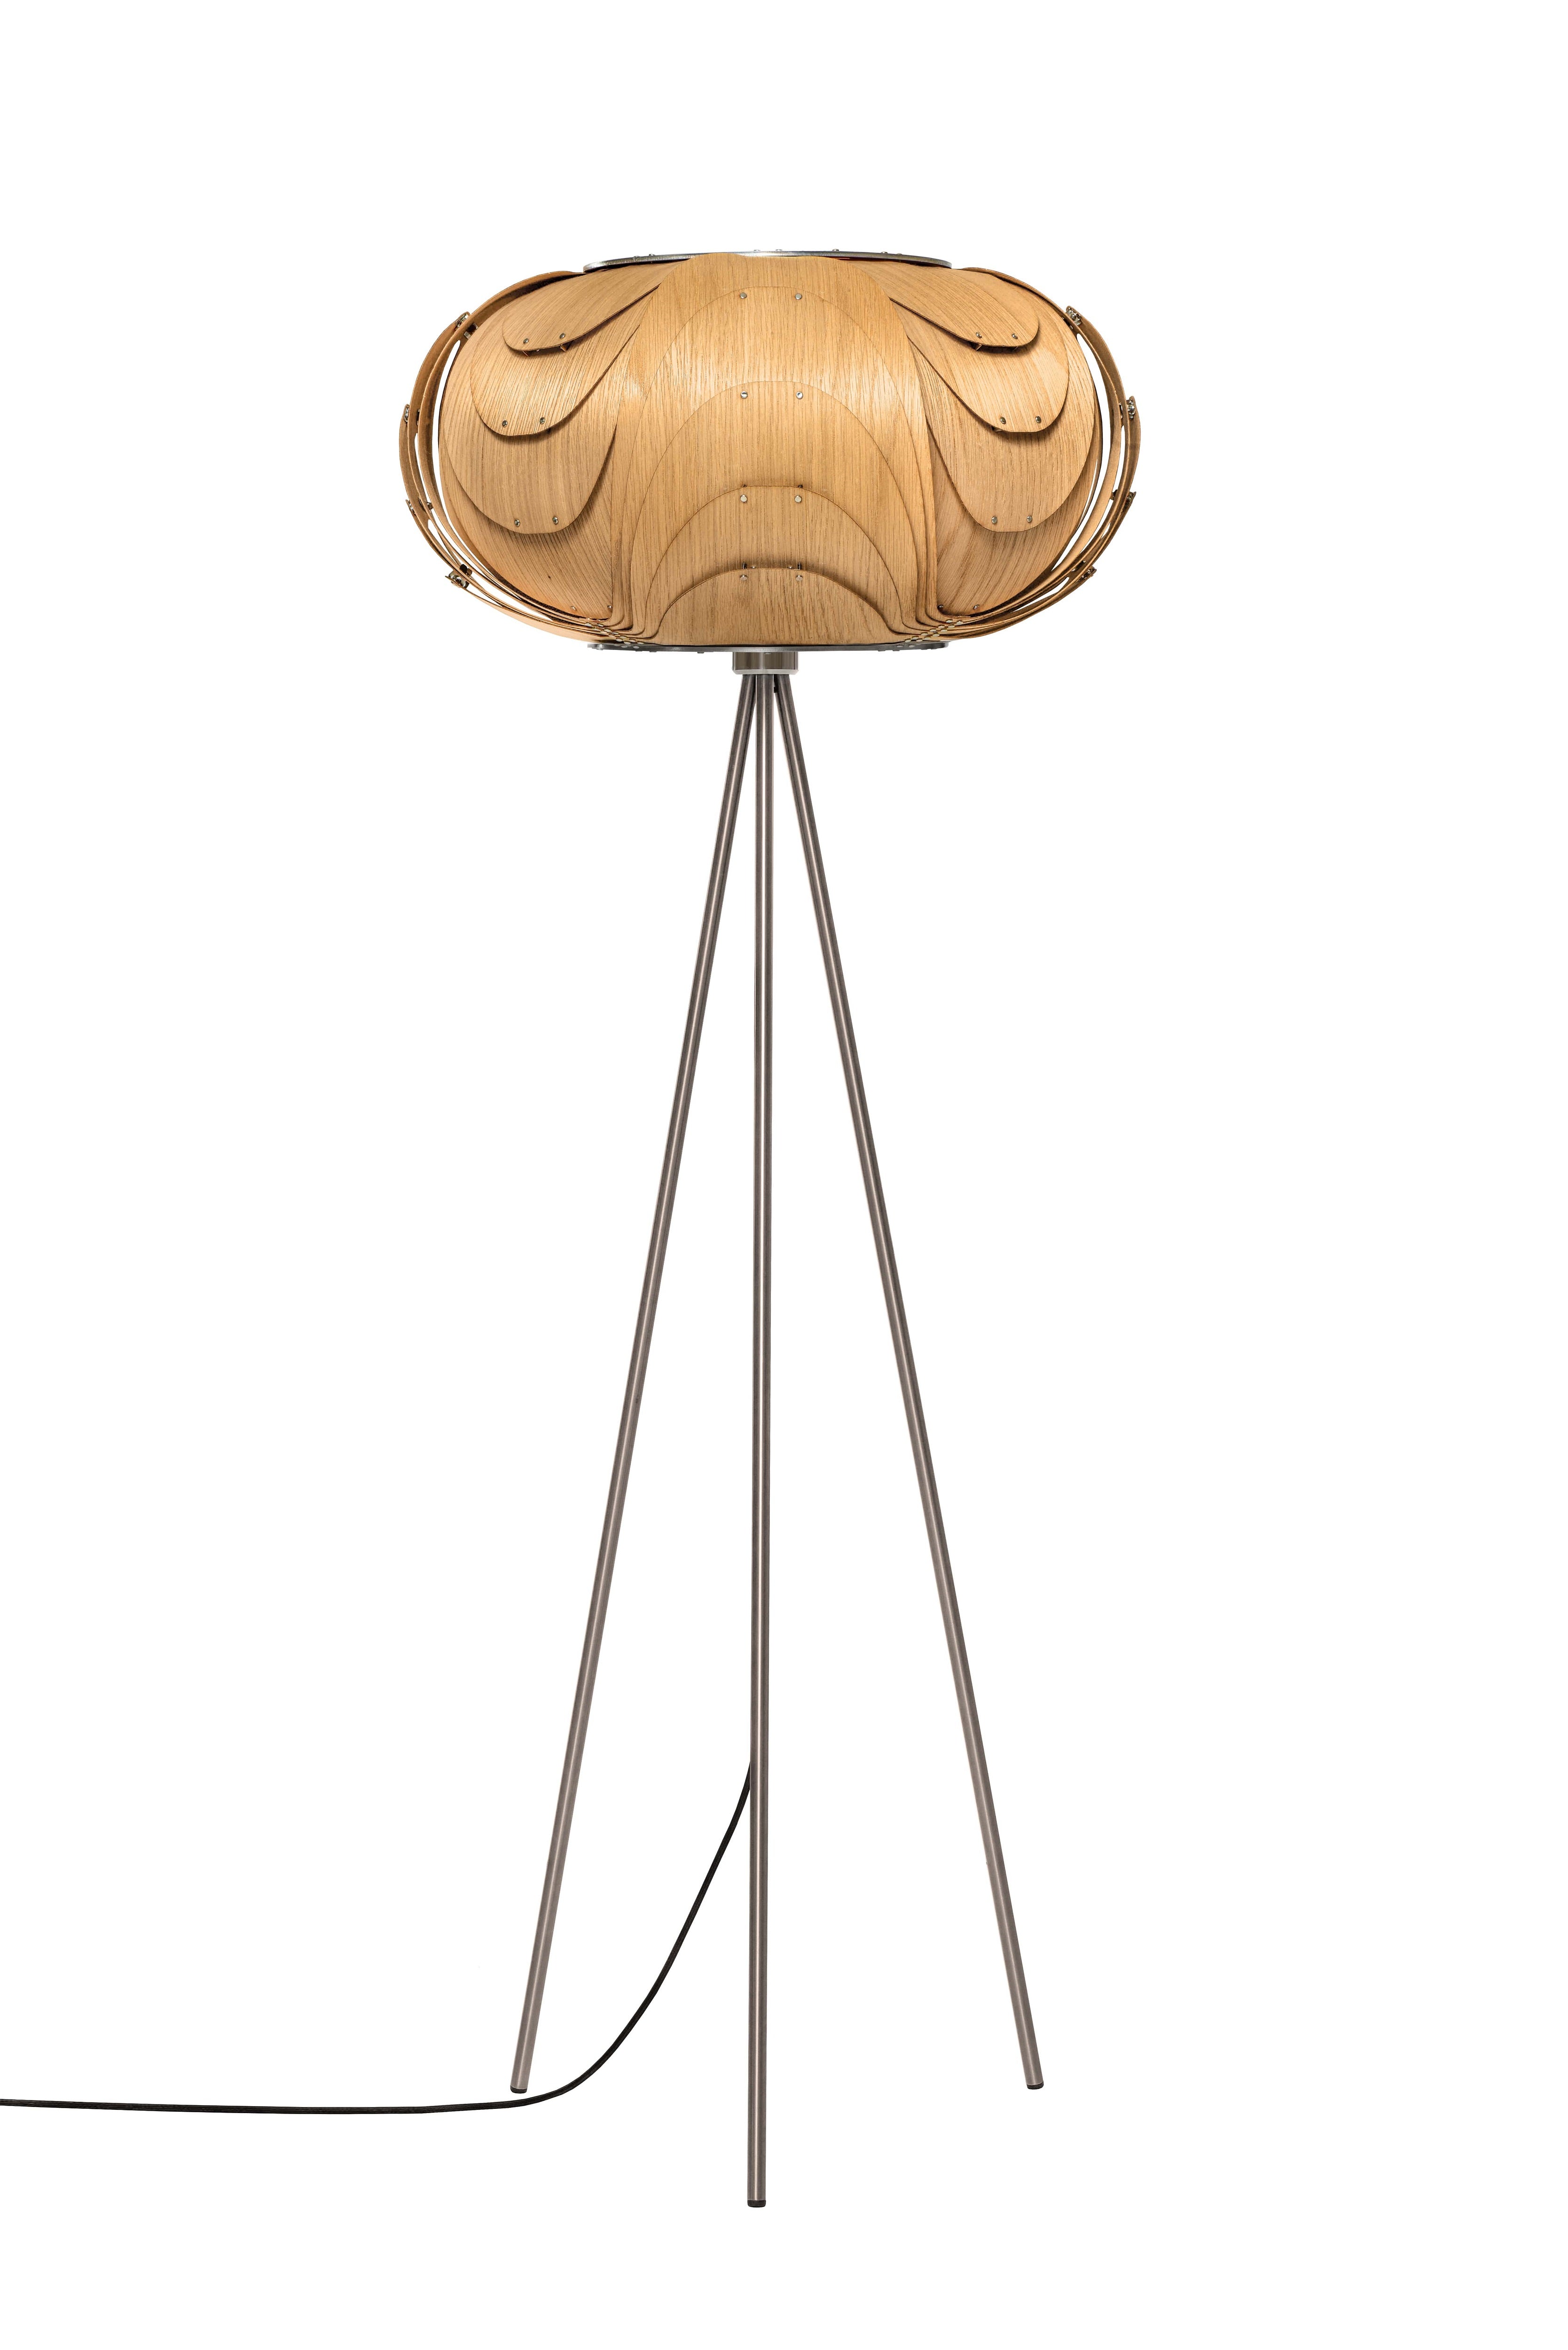 Moderne elegante Holz Stehlampe in Eiche natur mit gebürstetem Edelstahlständer